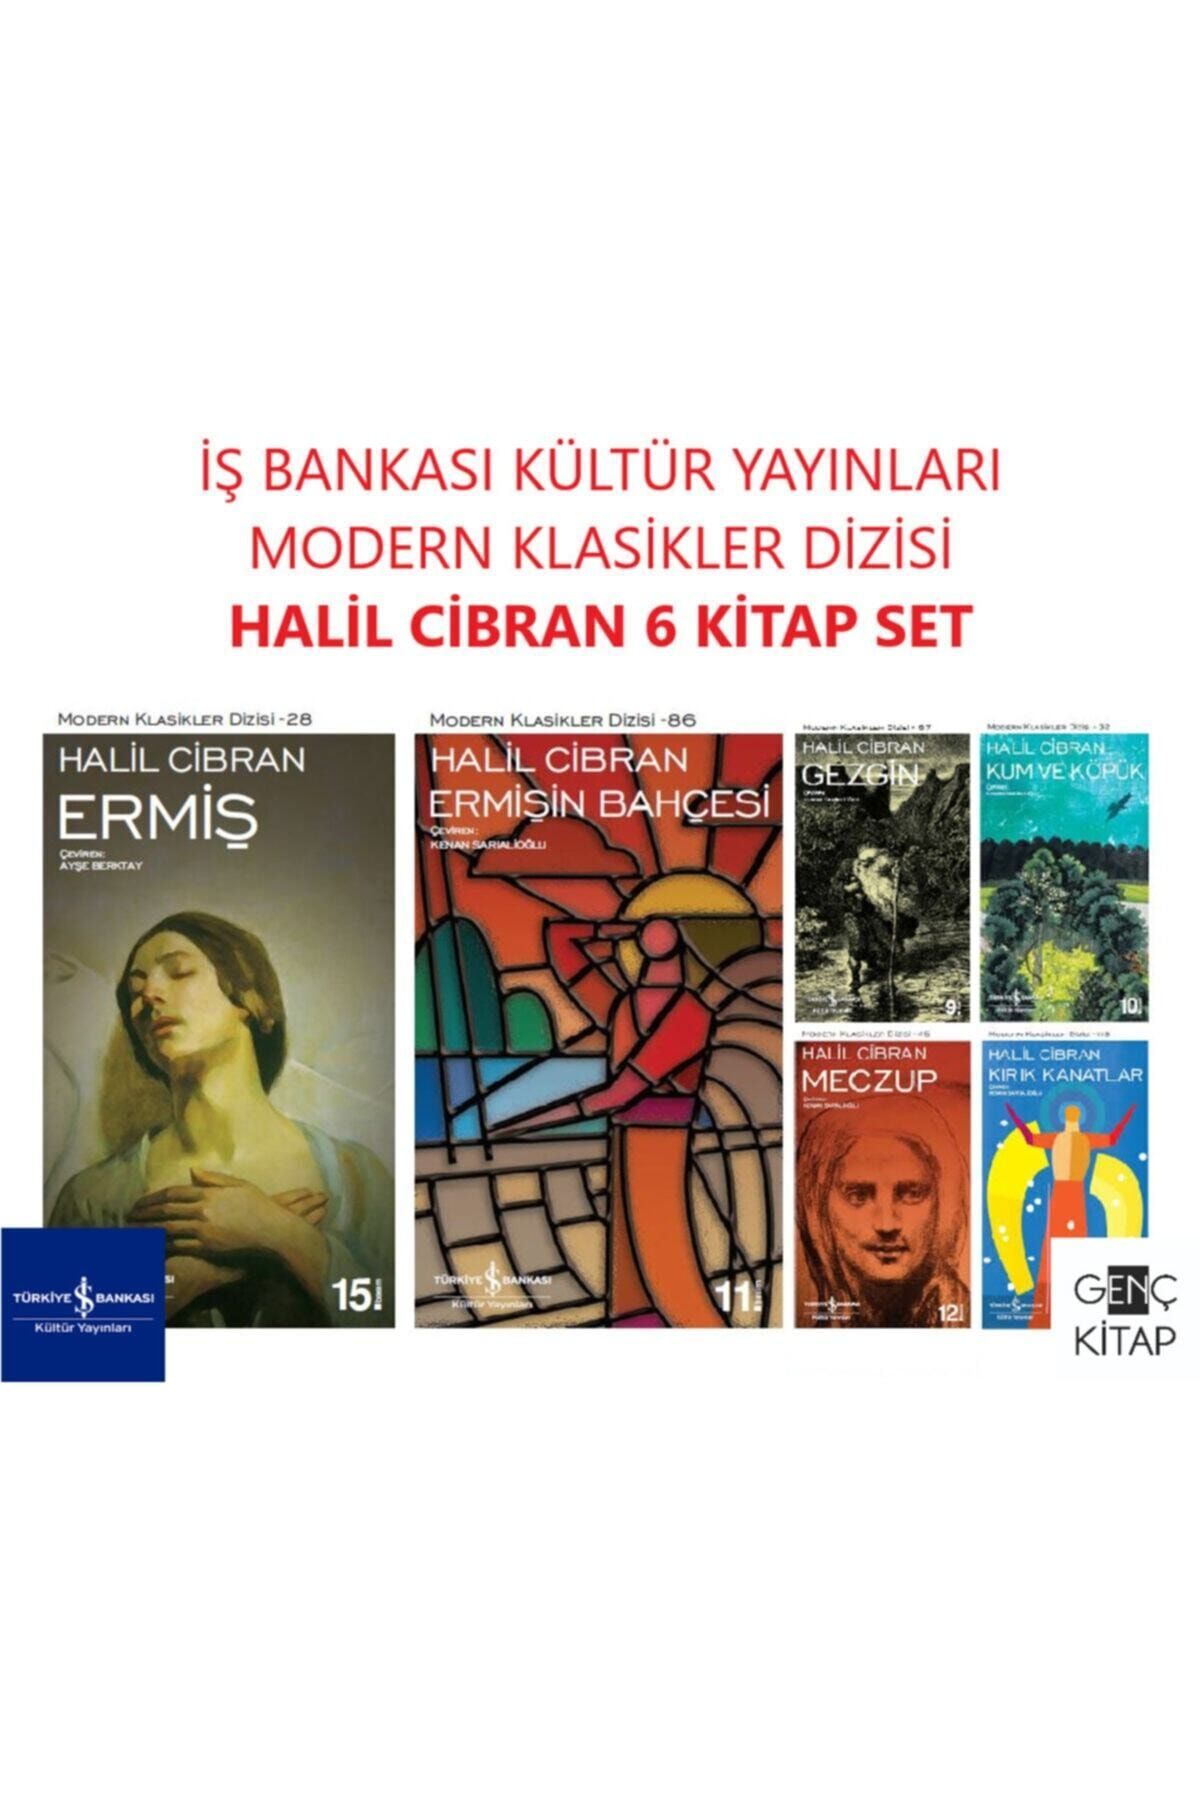 Türkiye İş Bankası Kültür Yayınları Iş Bankası Halil Cibran 6 Kitap Set Modern Klasikler Dizisi Ermiş-ermişin Bahçeis-gezgin-meczup